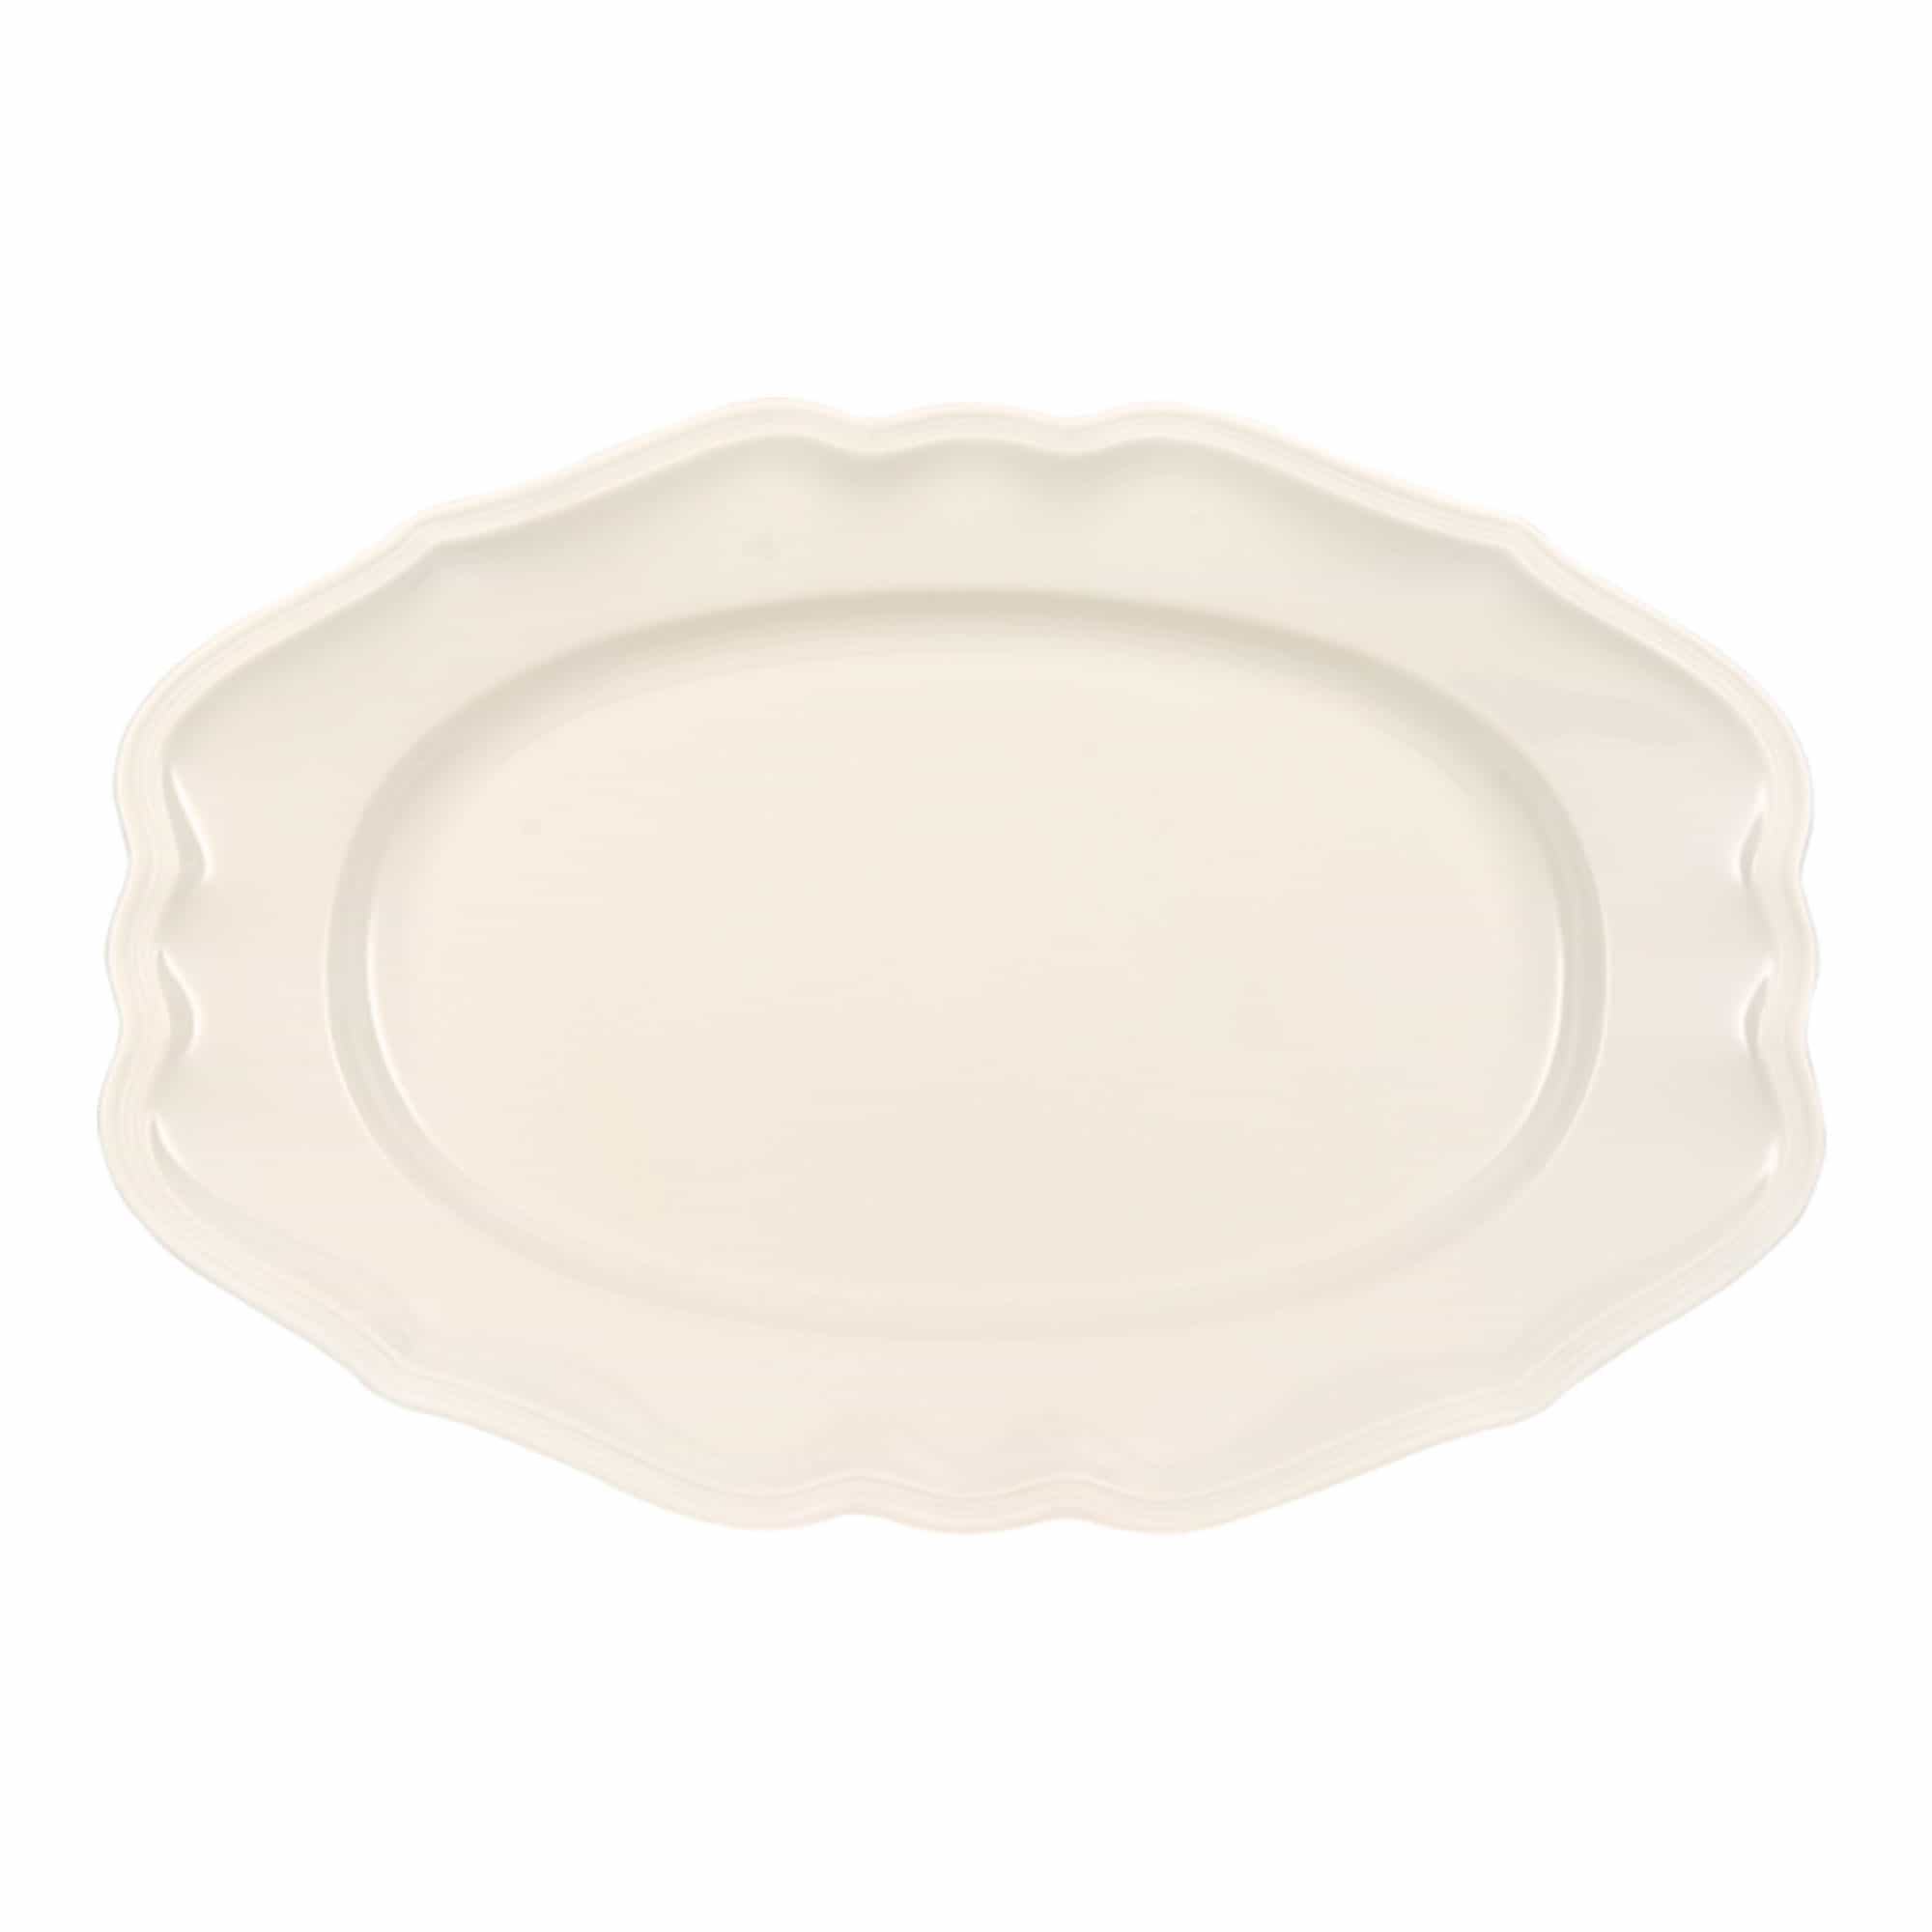 Manoir Oval Platter 37 cm